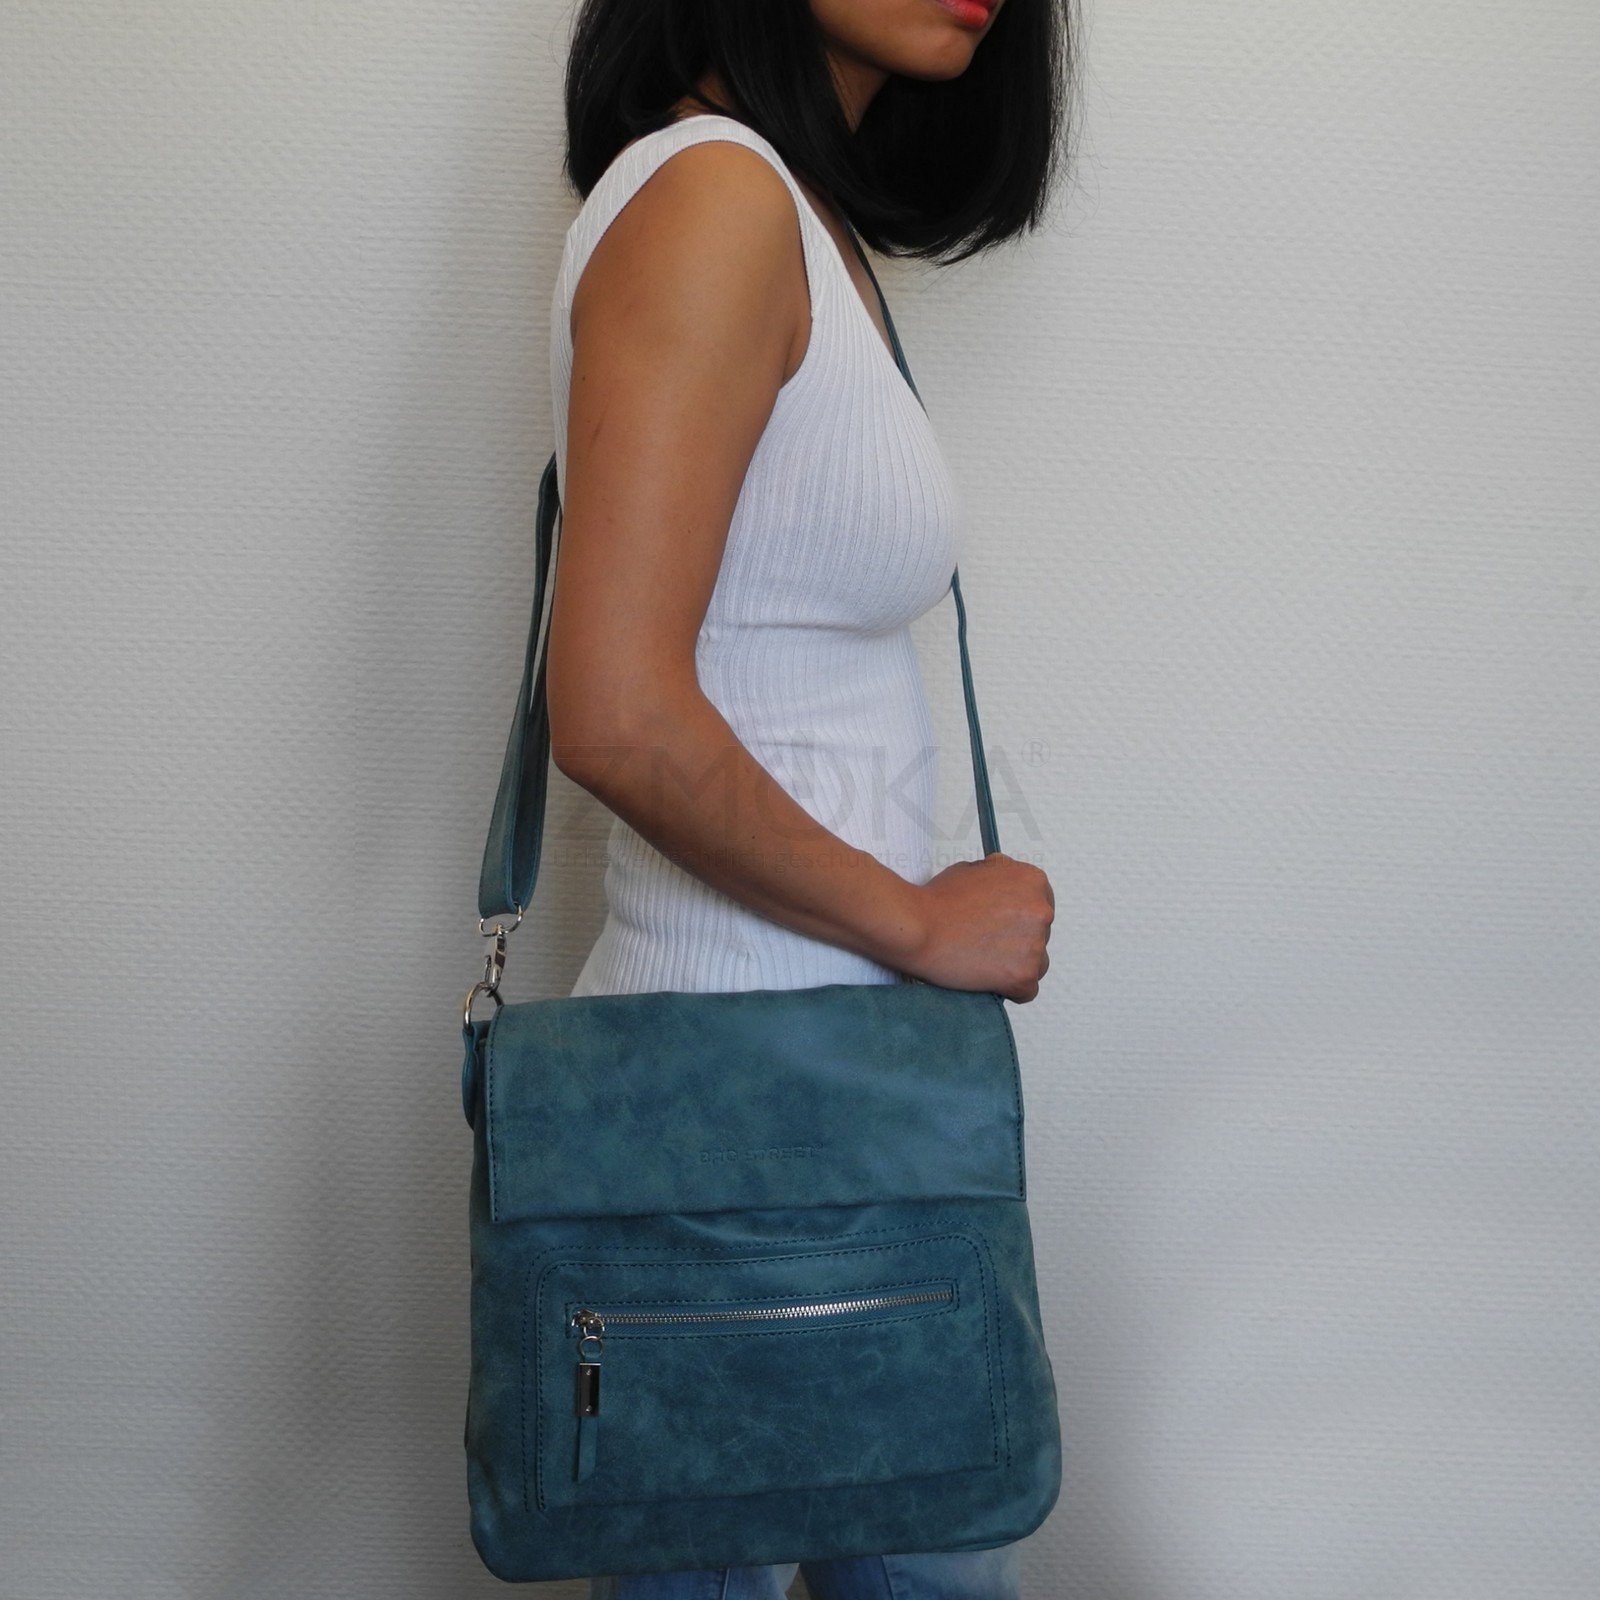 Damentasche Street STREET Schwarz Auswahl - Messengerbag Bag BAG Umhängetasche Handtasche Damen